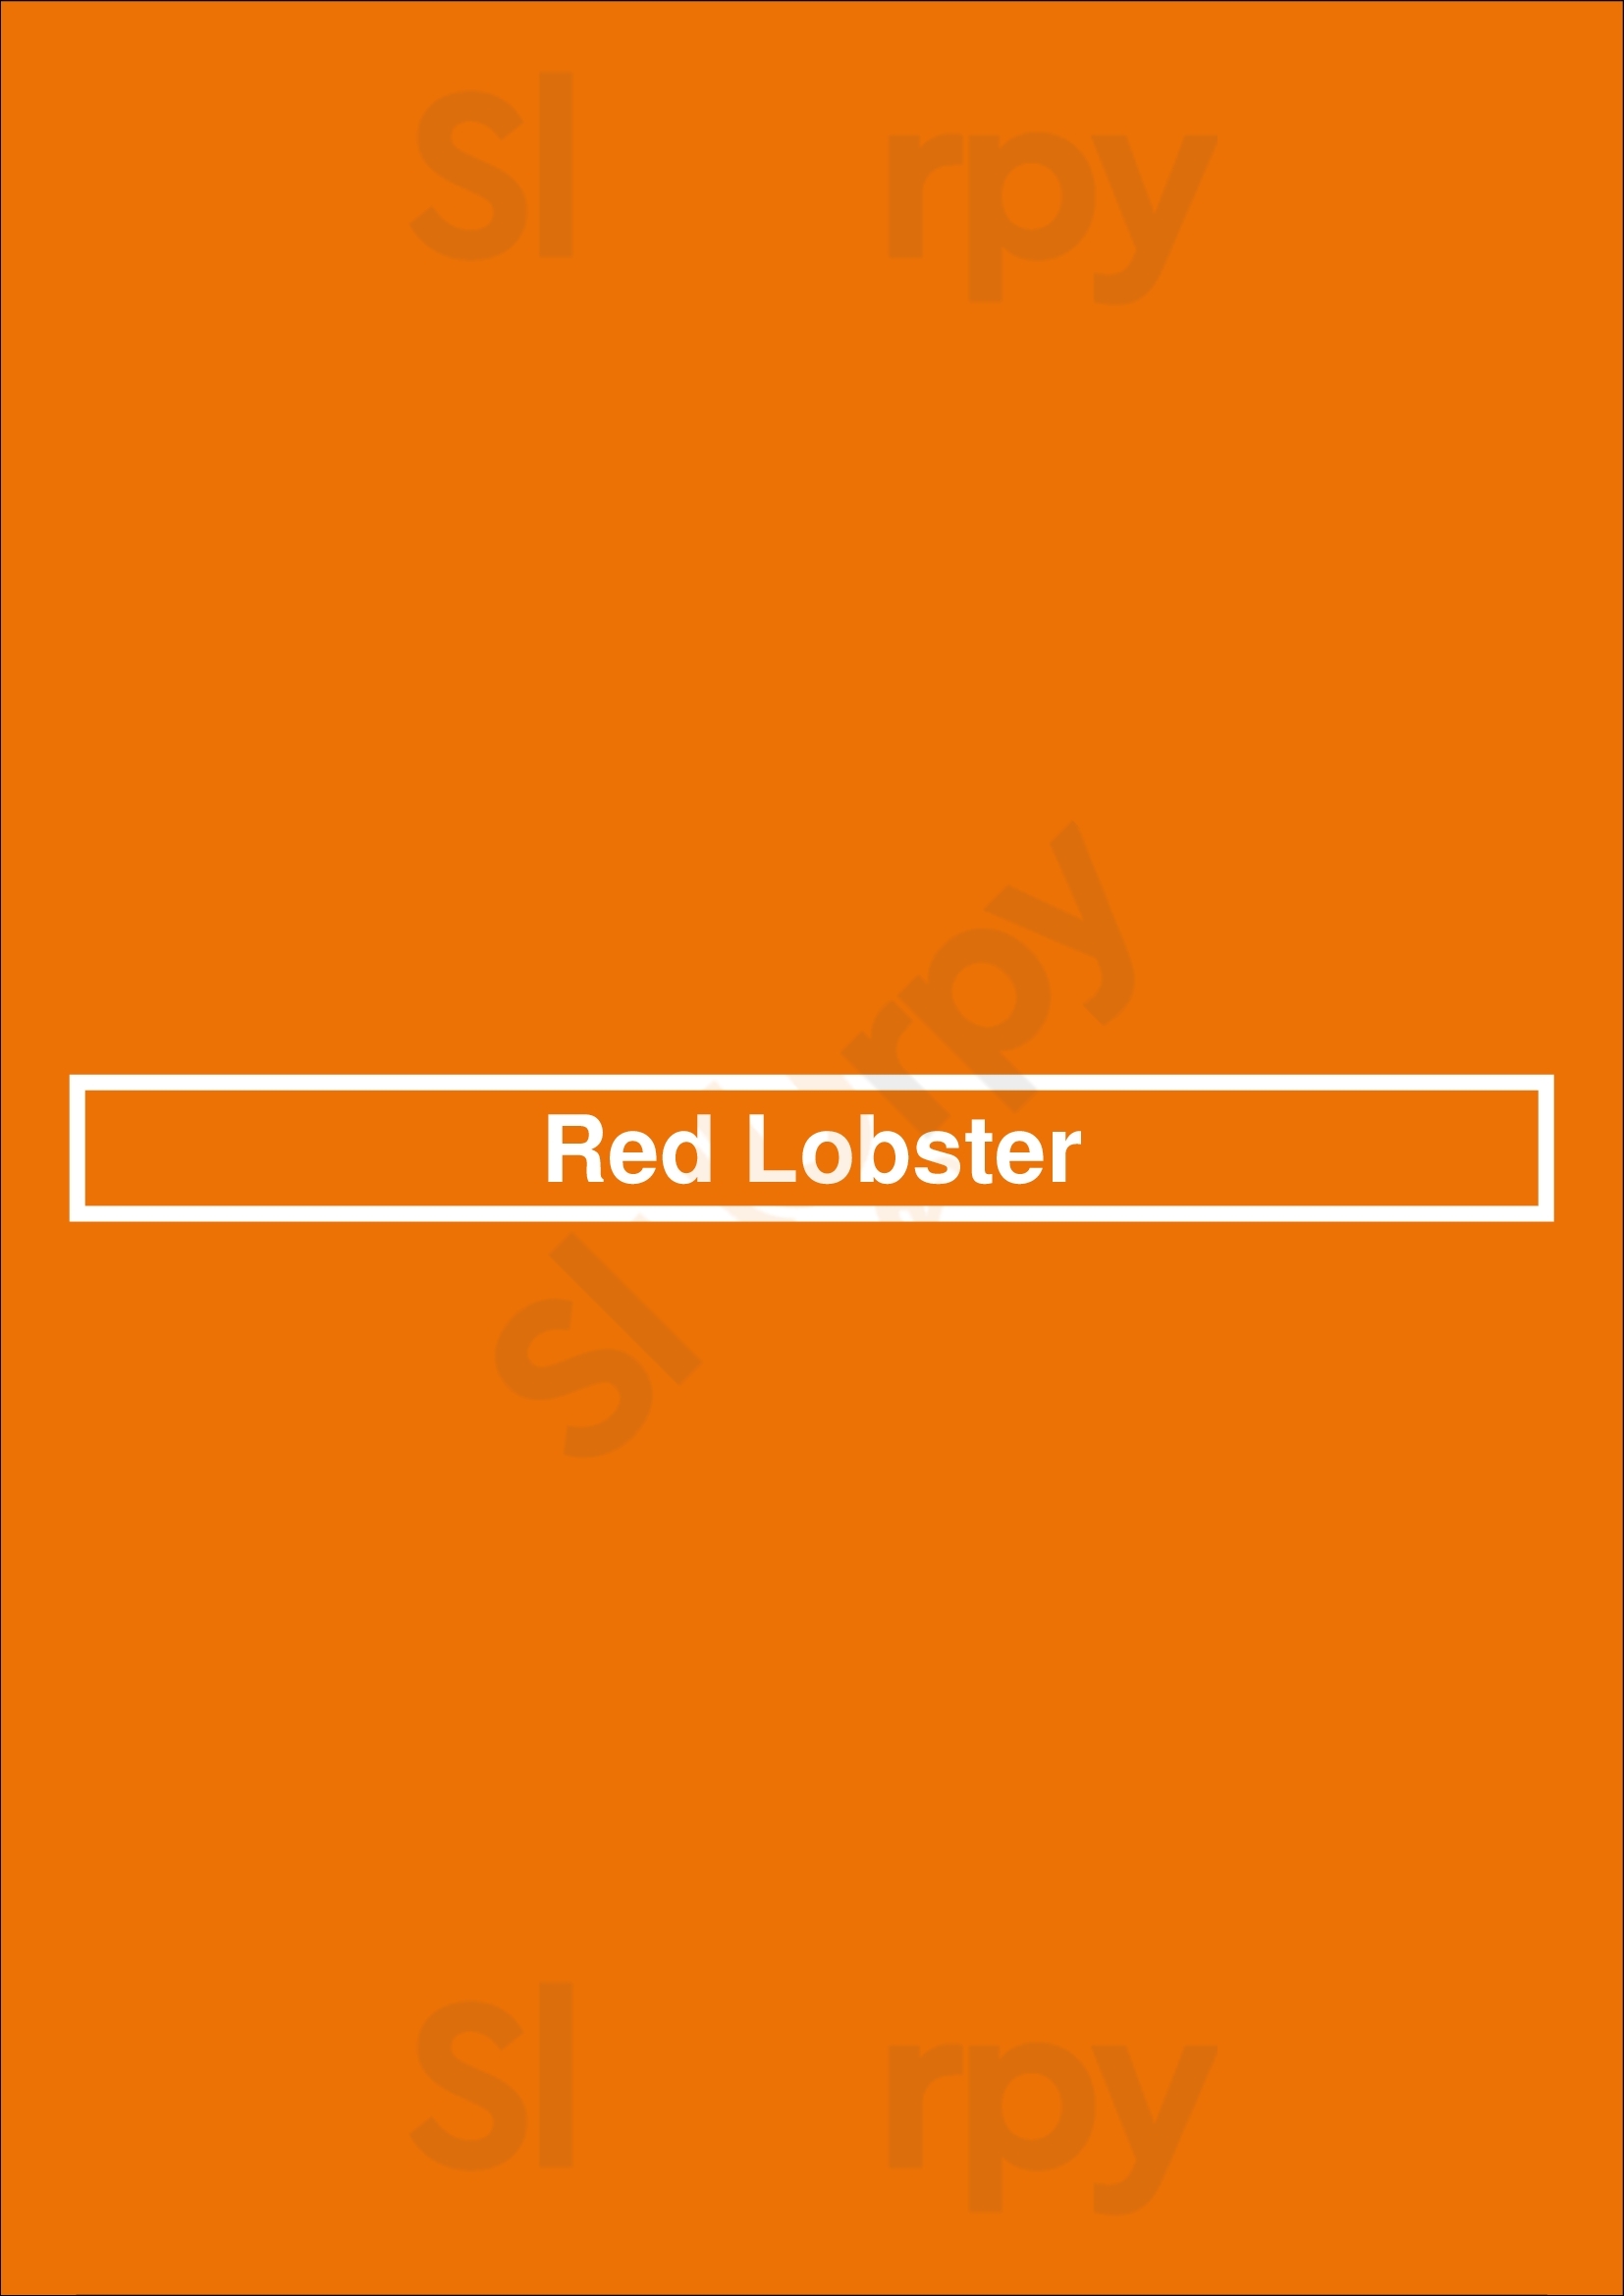 Red Lobster Minneapolis Menu - 1